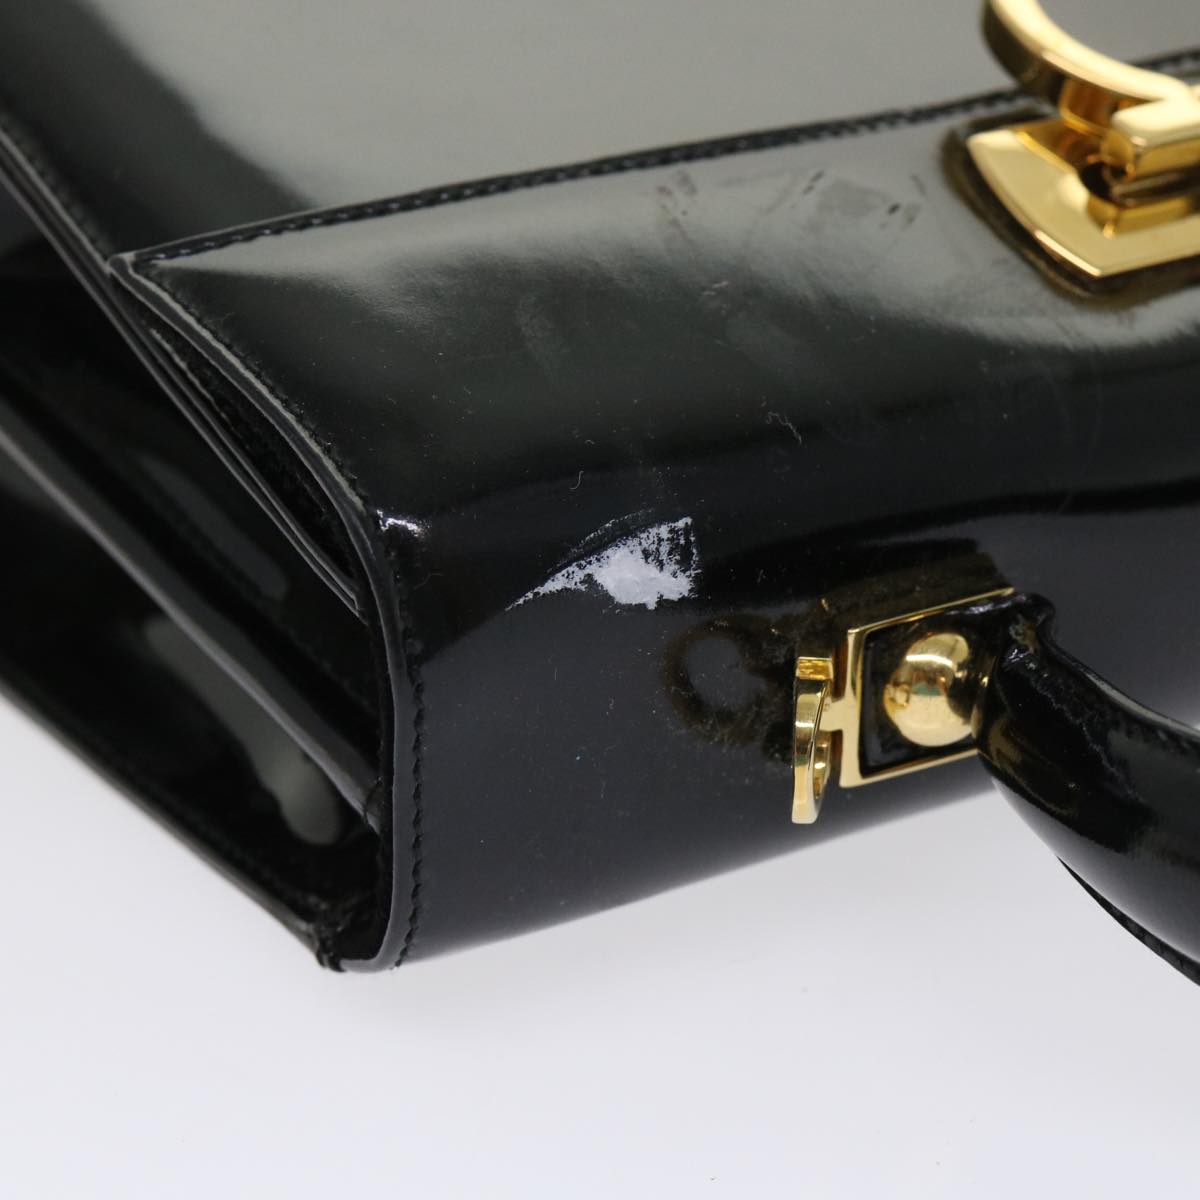 Salvatore Ferragamo Gancini Hand Bag Patent leather Black Auth 46963